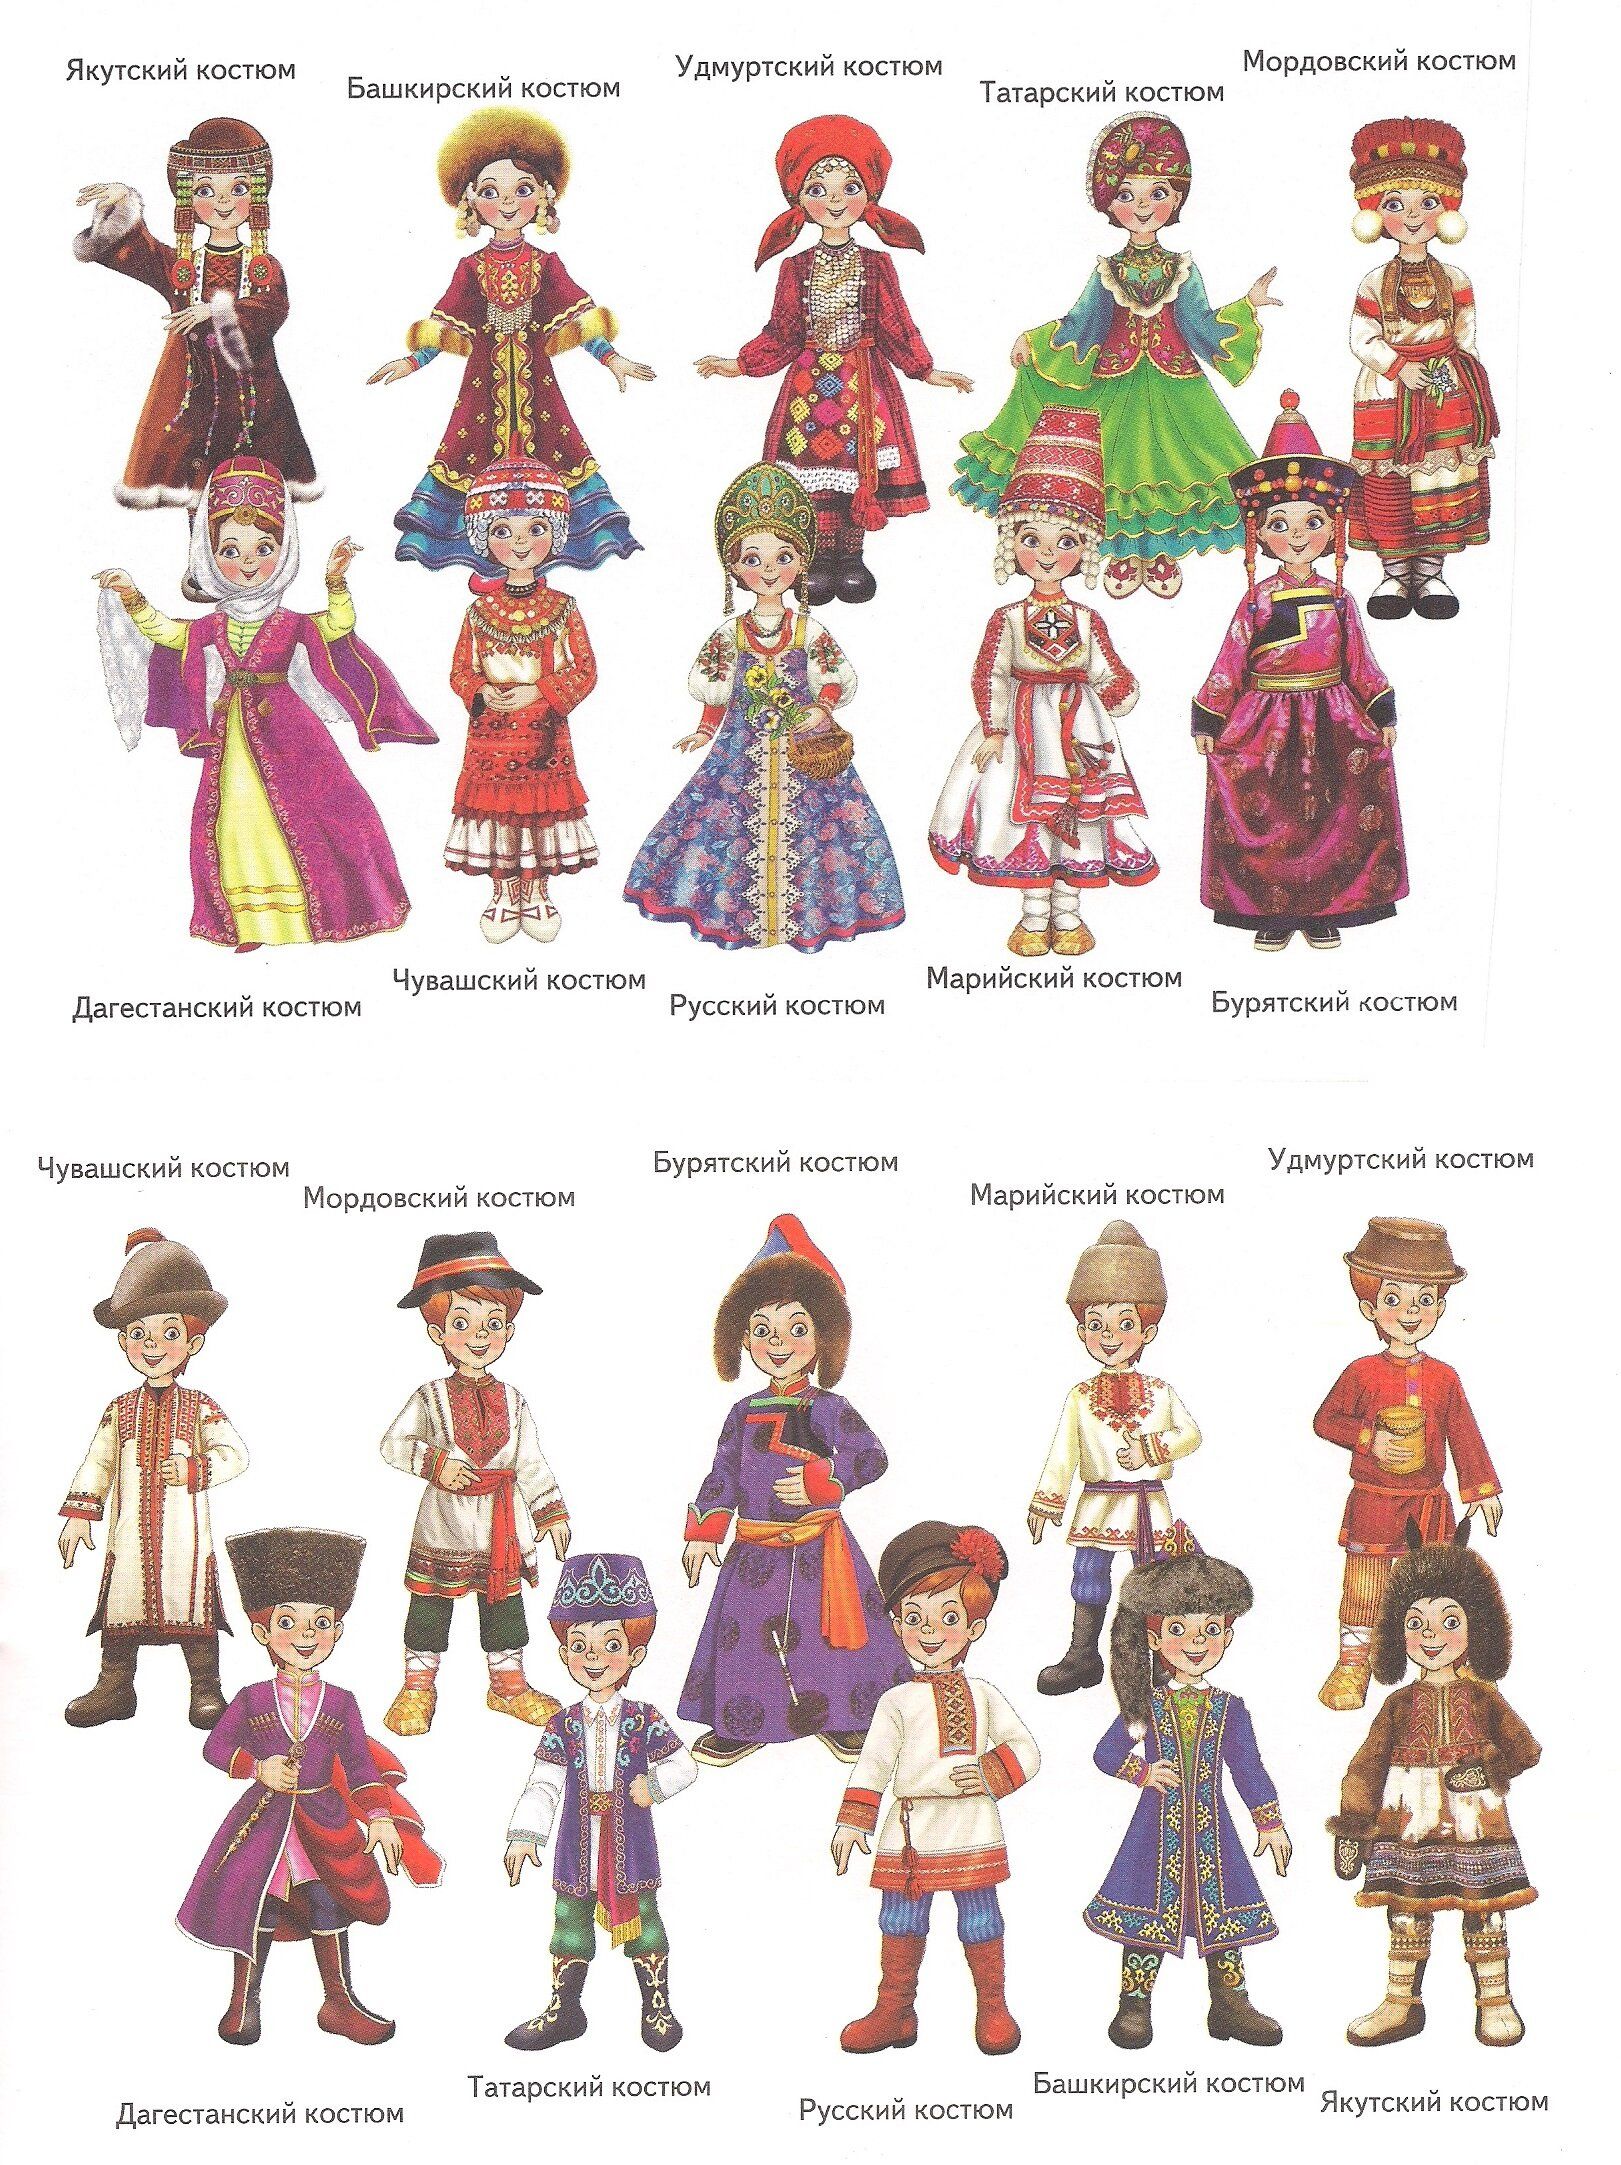 Куколки вырезные в национальных костюмах народов России